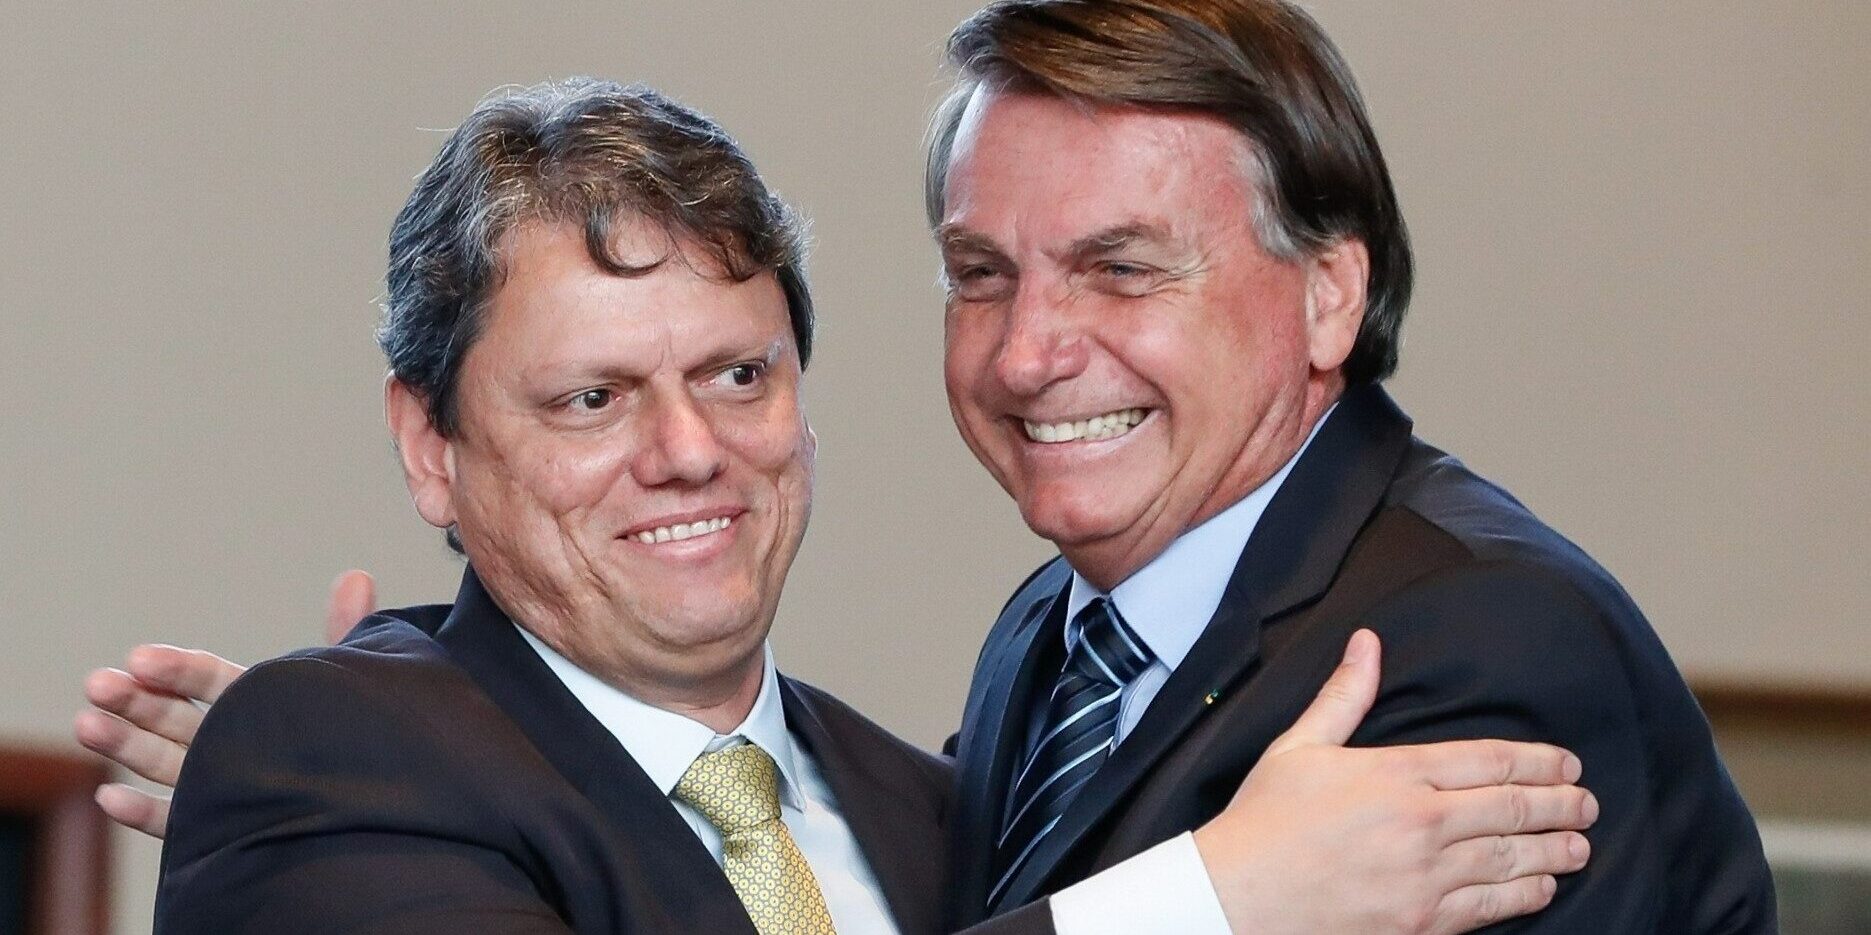 Com trama golpista desvendada, Bolsonaro tenta mobilizar sua base